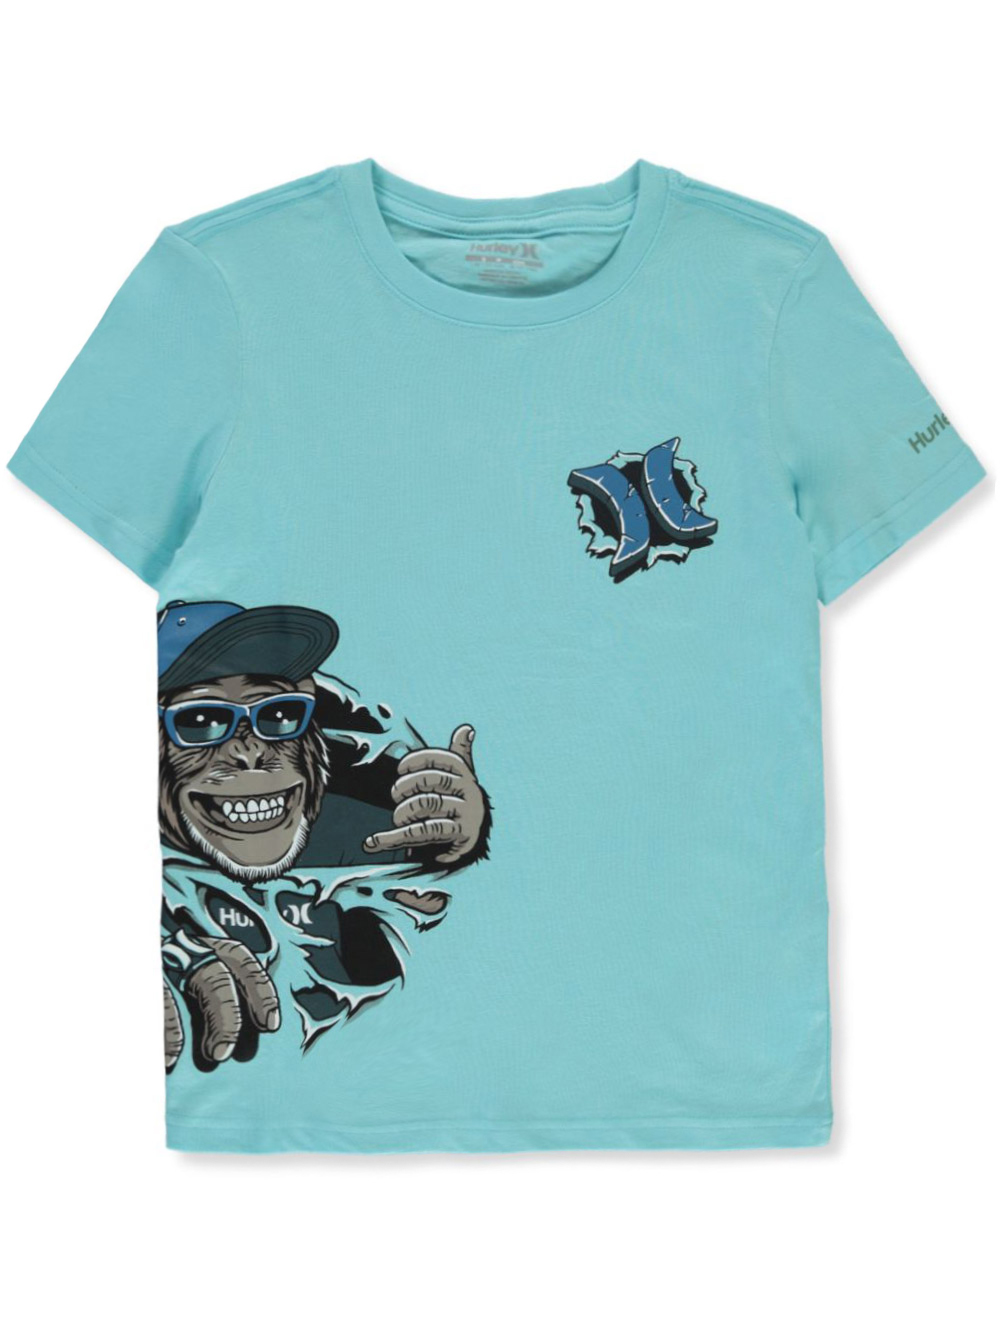 Boys Aqua T-Shirts